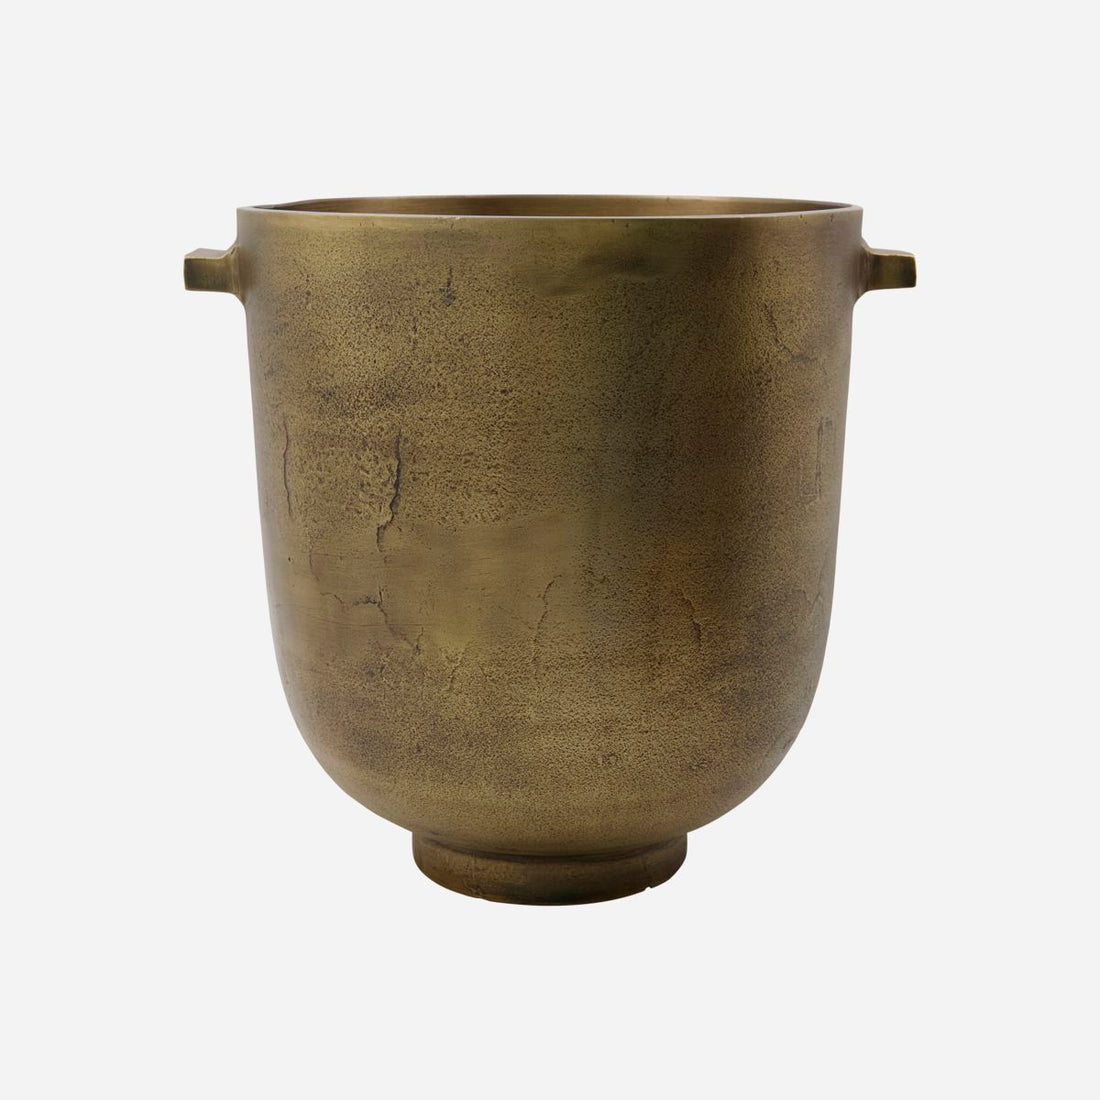 Talo-lääkäri Herb Pot, FoEM, Antique Brass-H: 28 cm, Dia: 25 cm